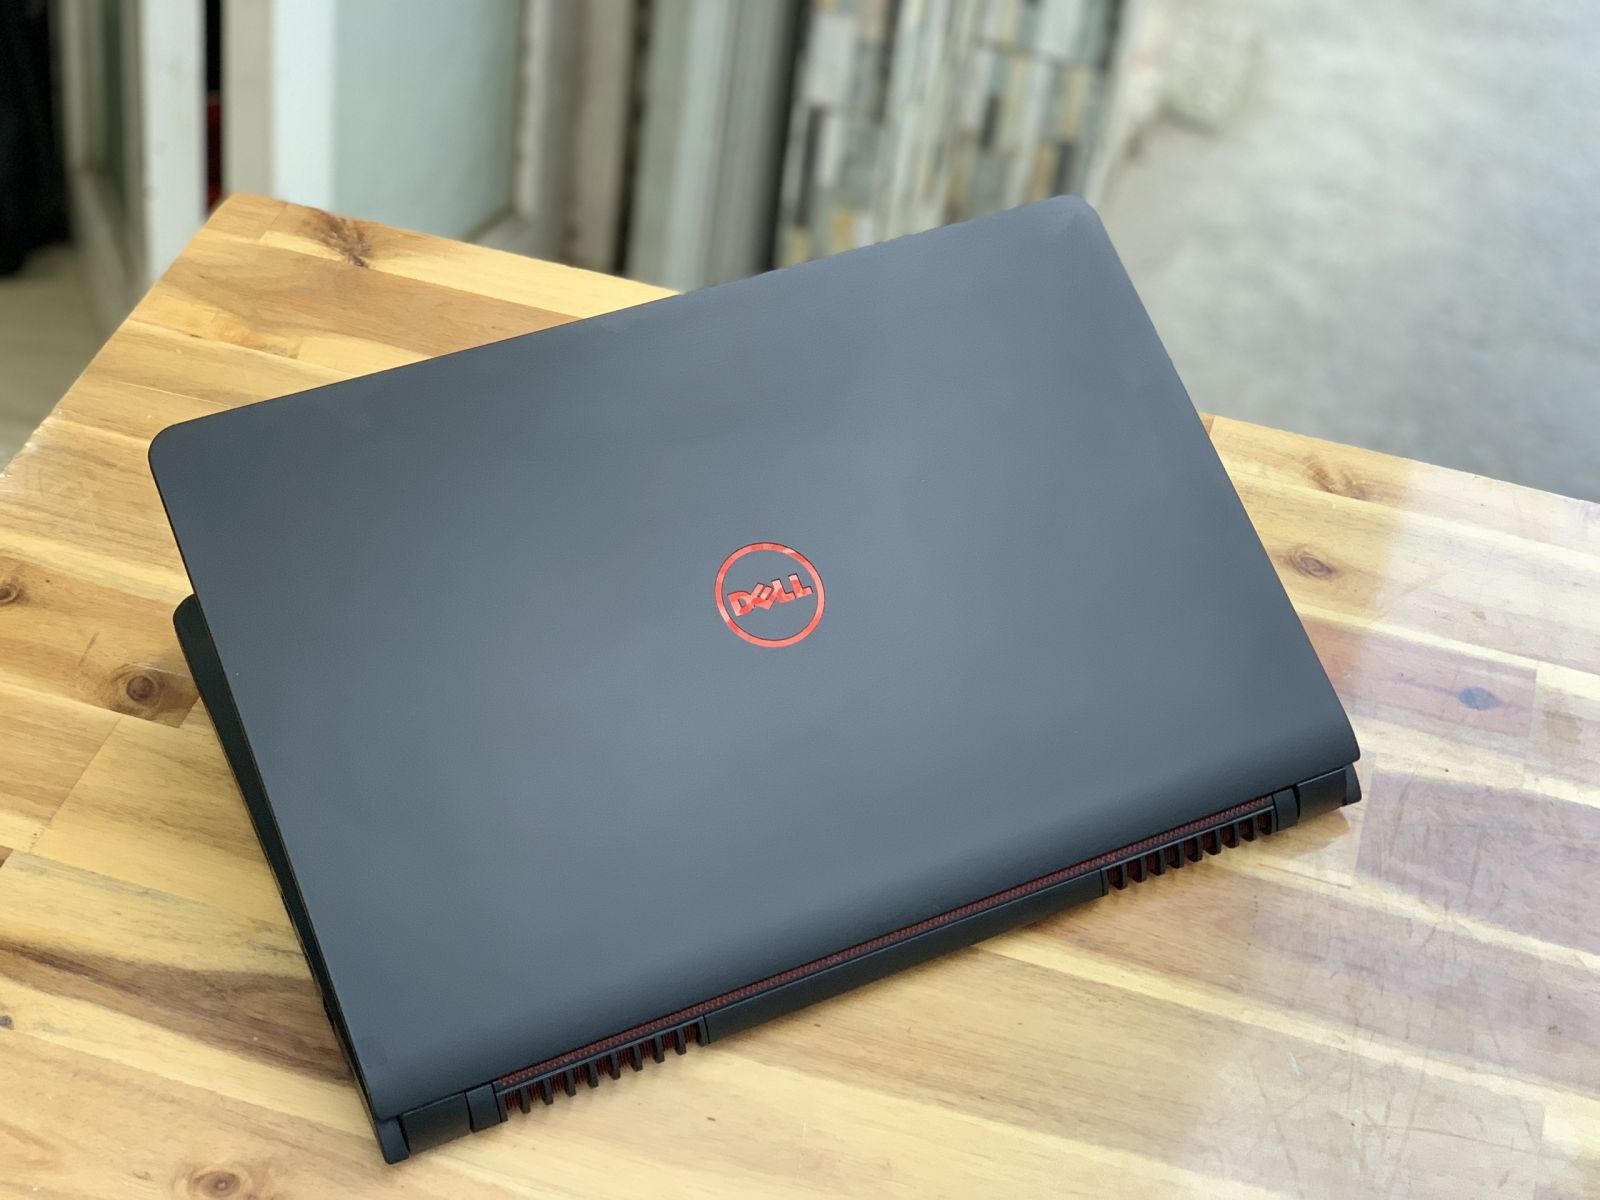 Laptop Dell Gaming 7559, i7 6700HQ 8G SSD256 Vga GTX960 4G Full HD Đèn phím Đẹp zin Giá rẻ5